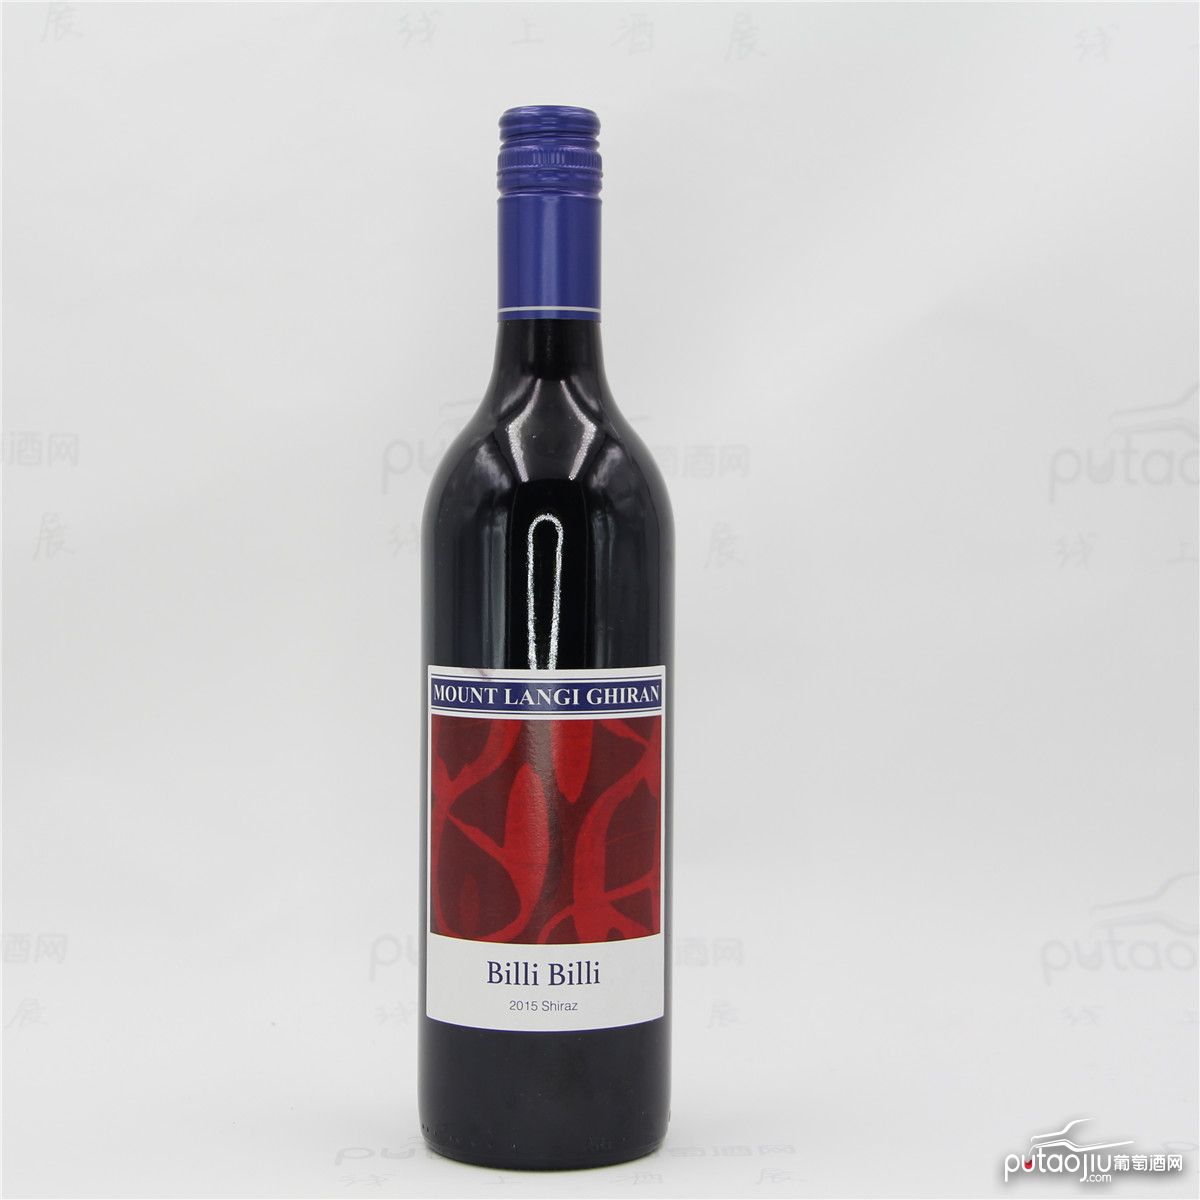  澳大利亚格兰屏产区朗节酒庄比利比利西拉双红五星酒庄干红葡萄酒 